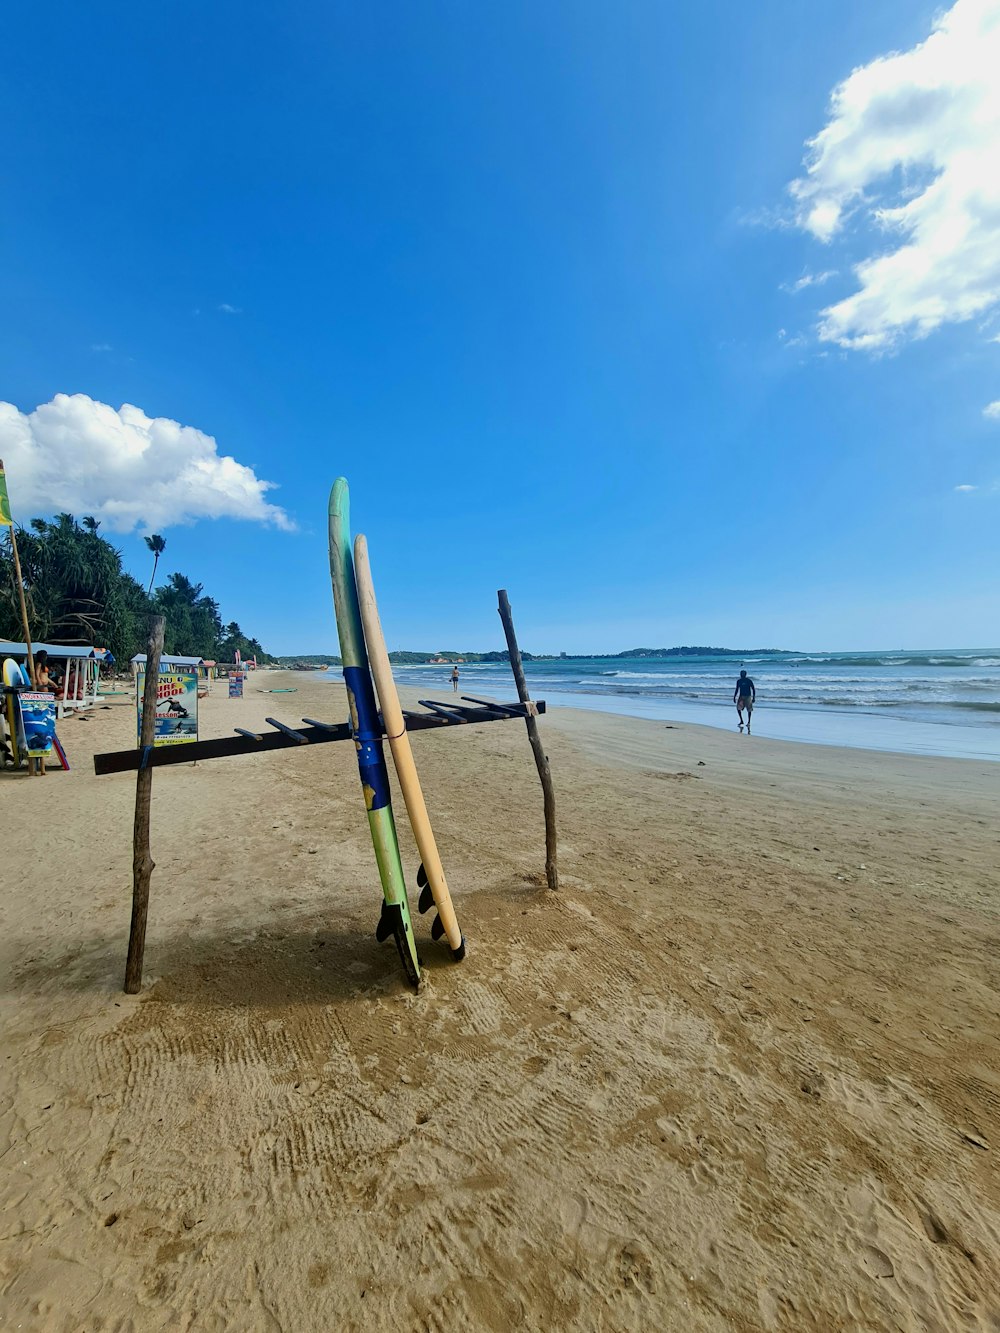 surfboards on a beach